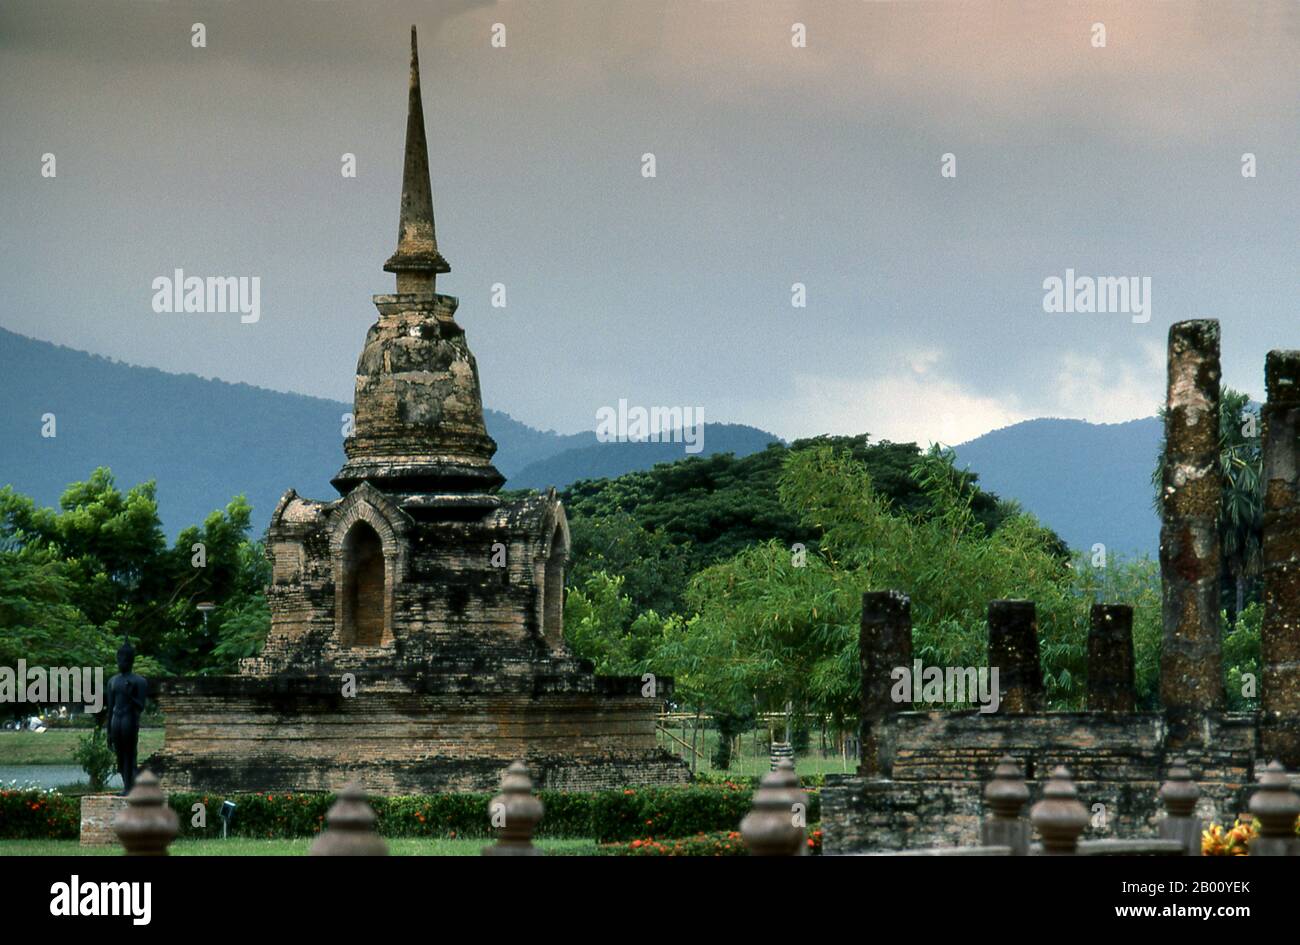 Thailandia: Nuvole monsonone su Wat SA si, Sukhothai Historical Park. Sukhothai, che letteralmente significa "Alba della felicità", fu la capitale del regno di Sukhothai e fu fondata nel 1238. Fu la capitale dell'Impero Tailandese per circa 140 anni. Foto Stock